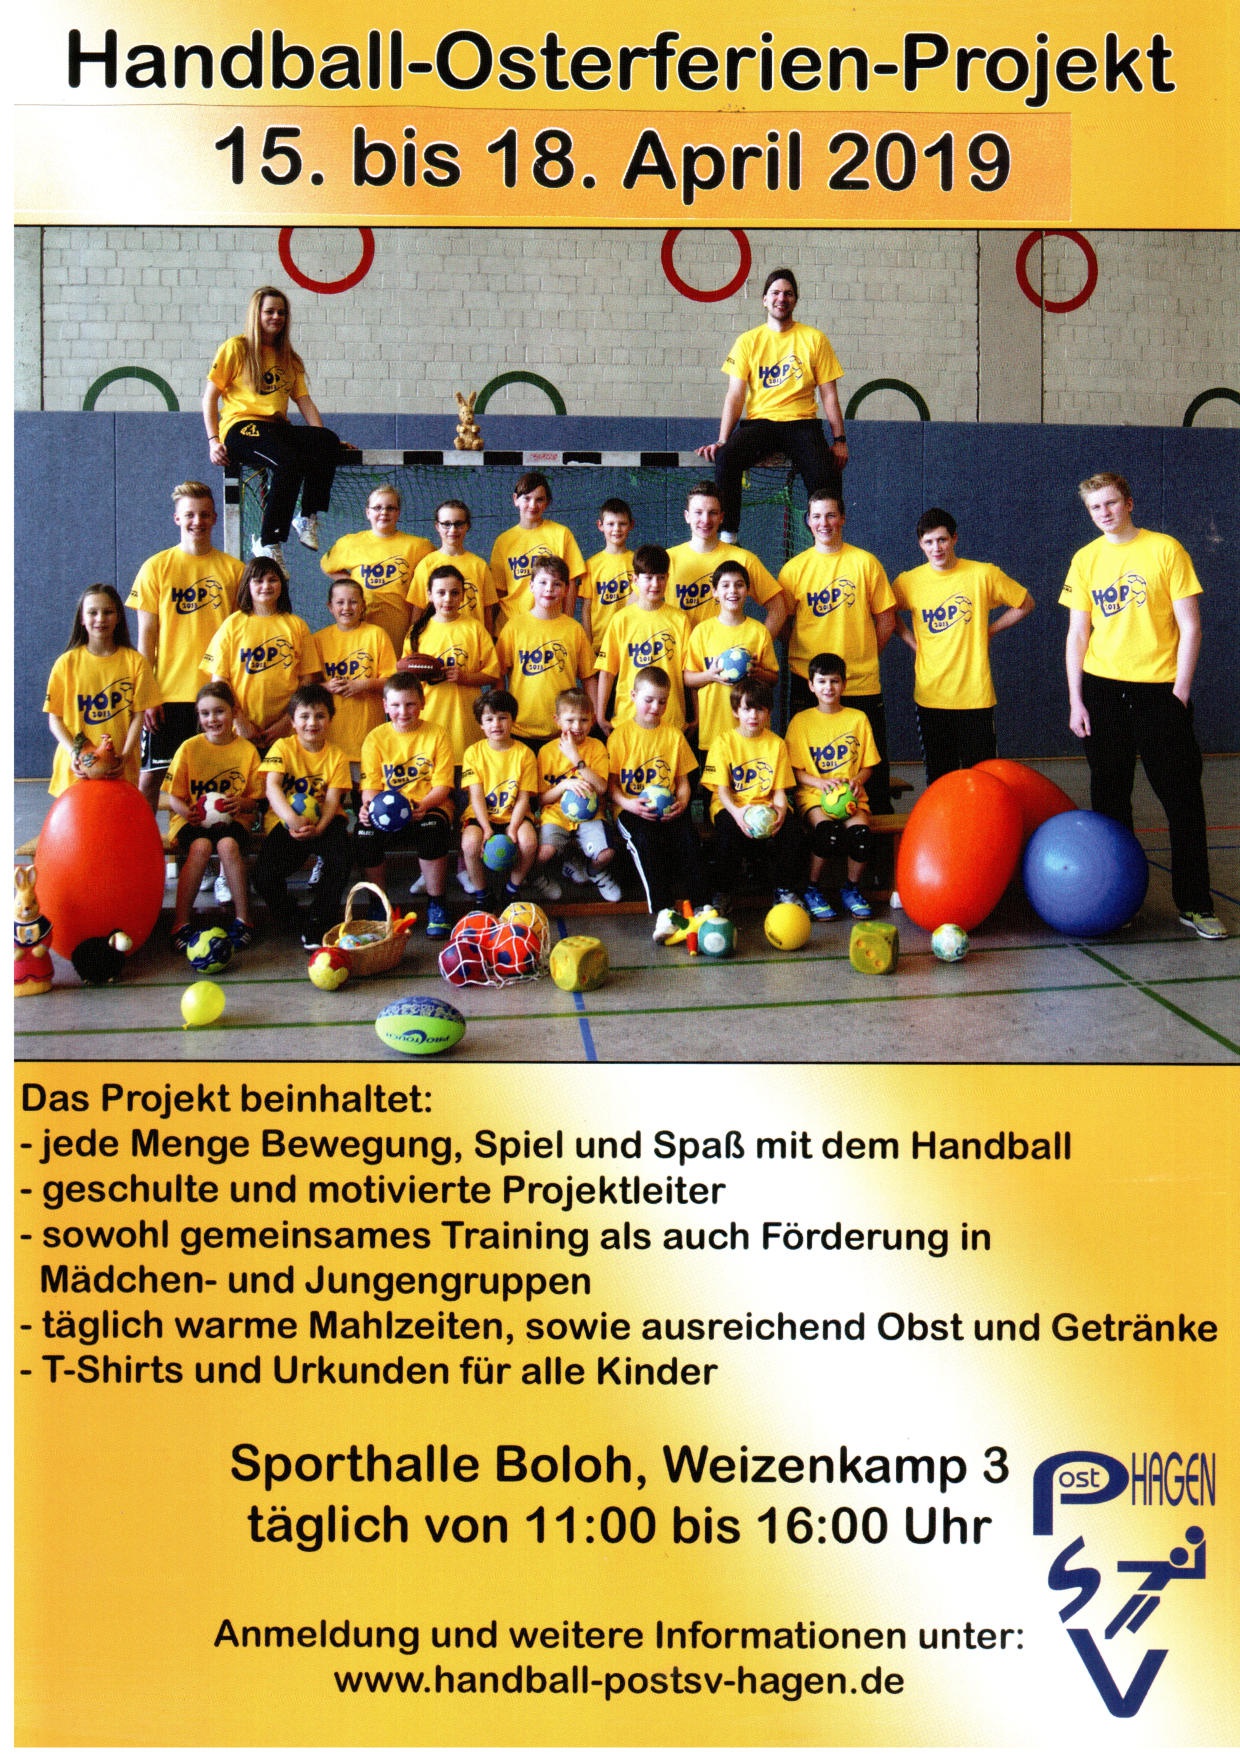 Handball-Osterferien-Projekt